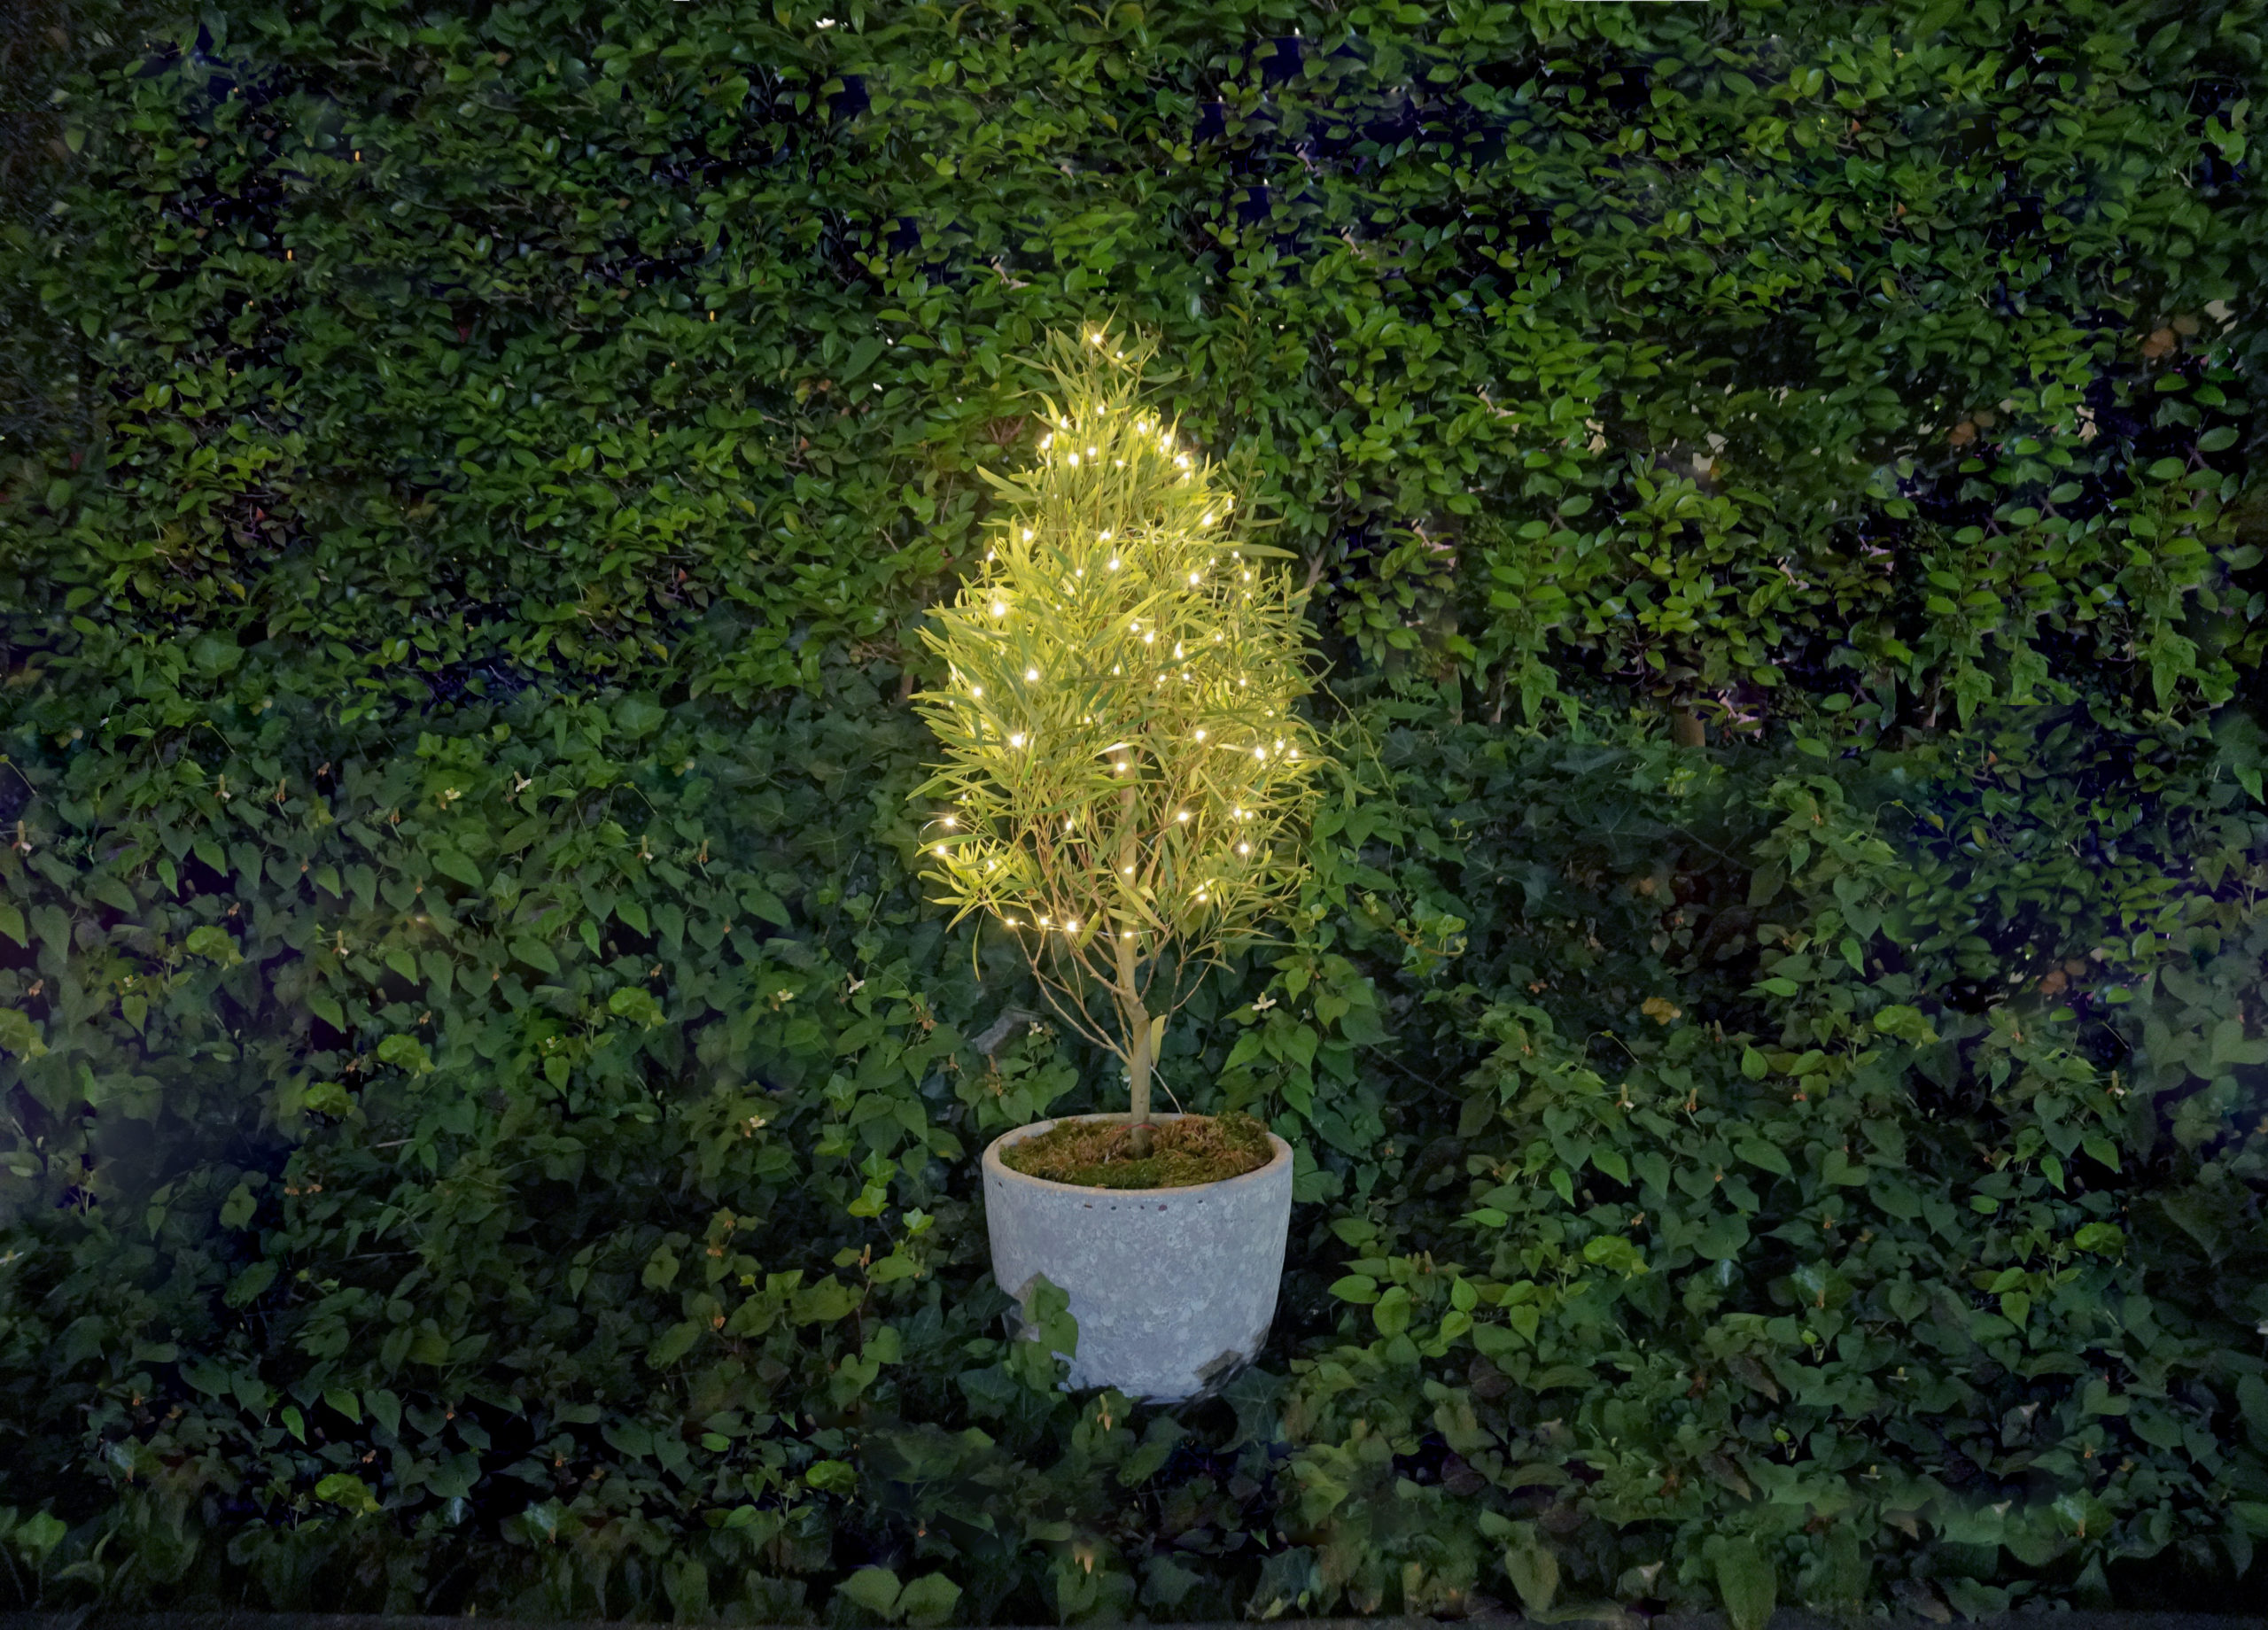 植物のエネルギーで発電『botanical light』